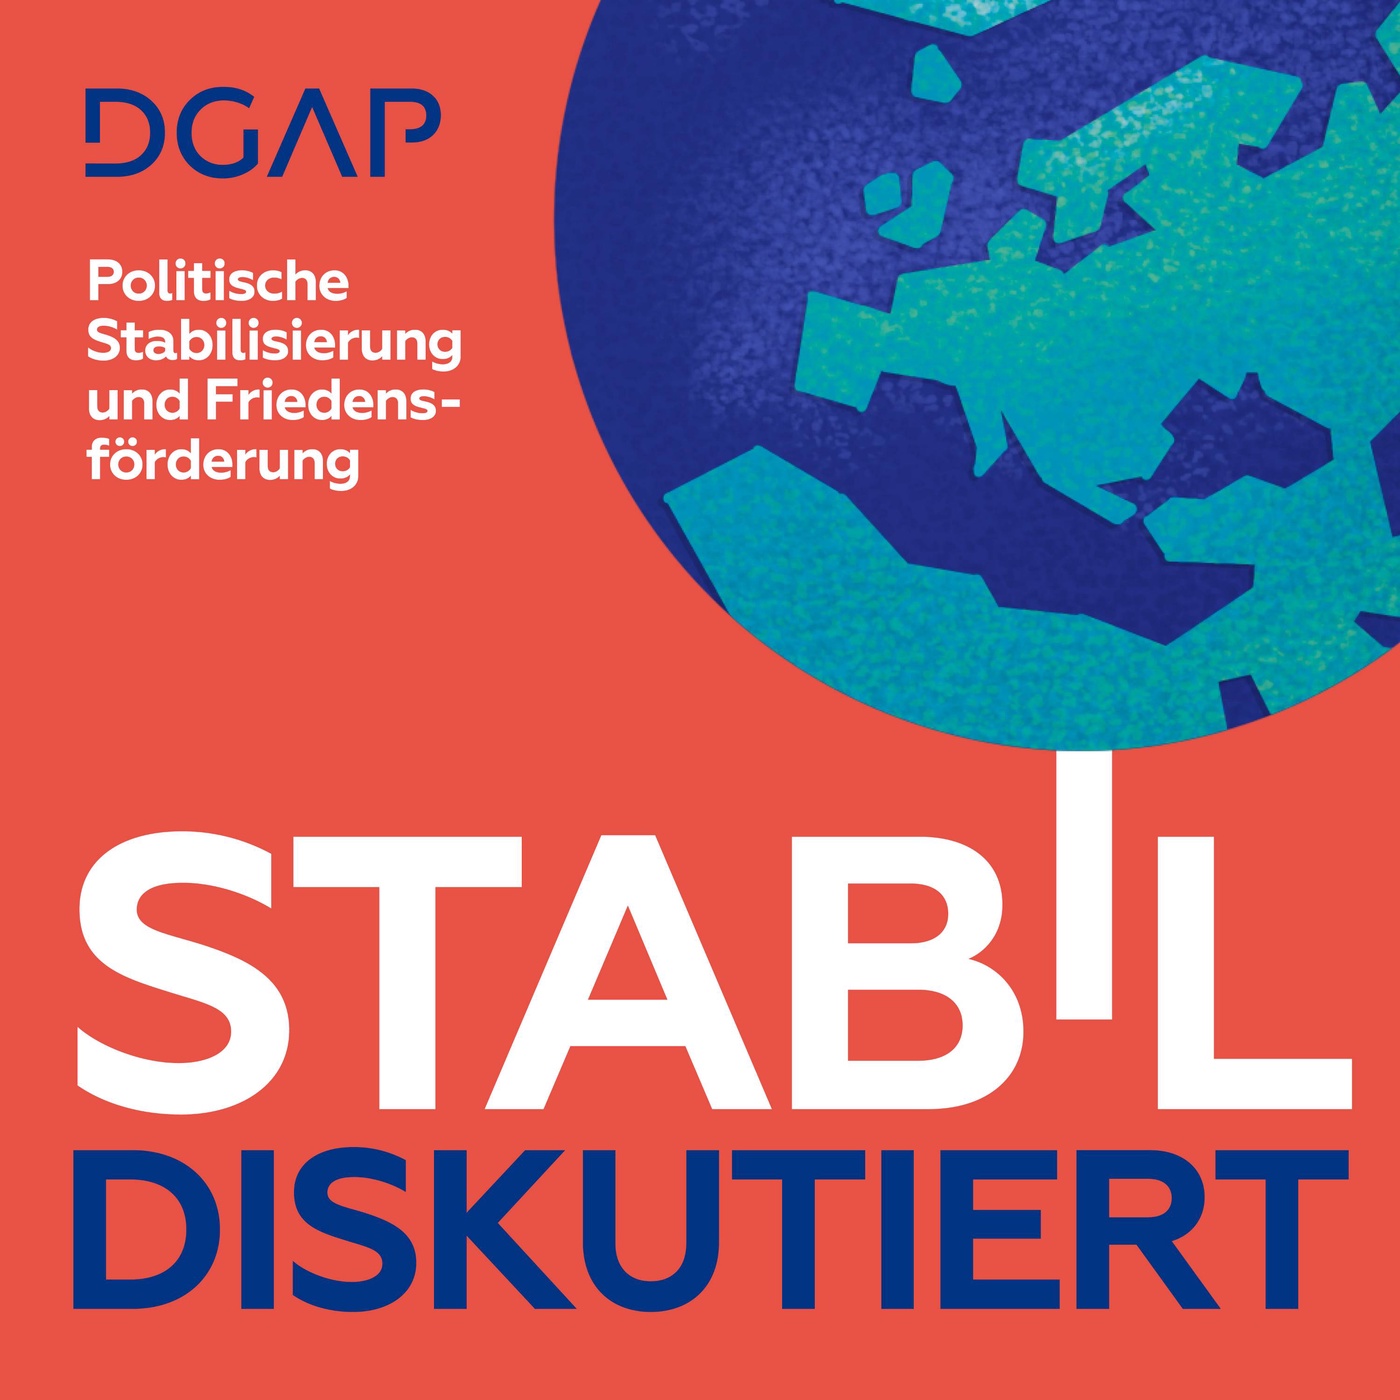 Stabil diskutiert – politische Stabilisierung und Friedensförderung